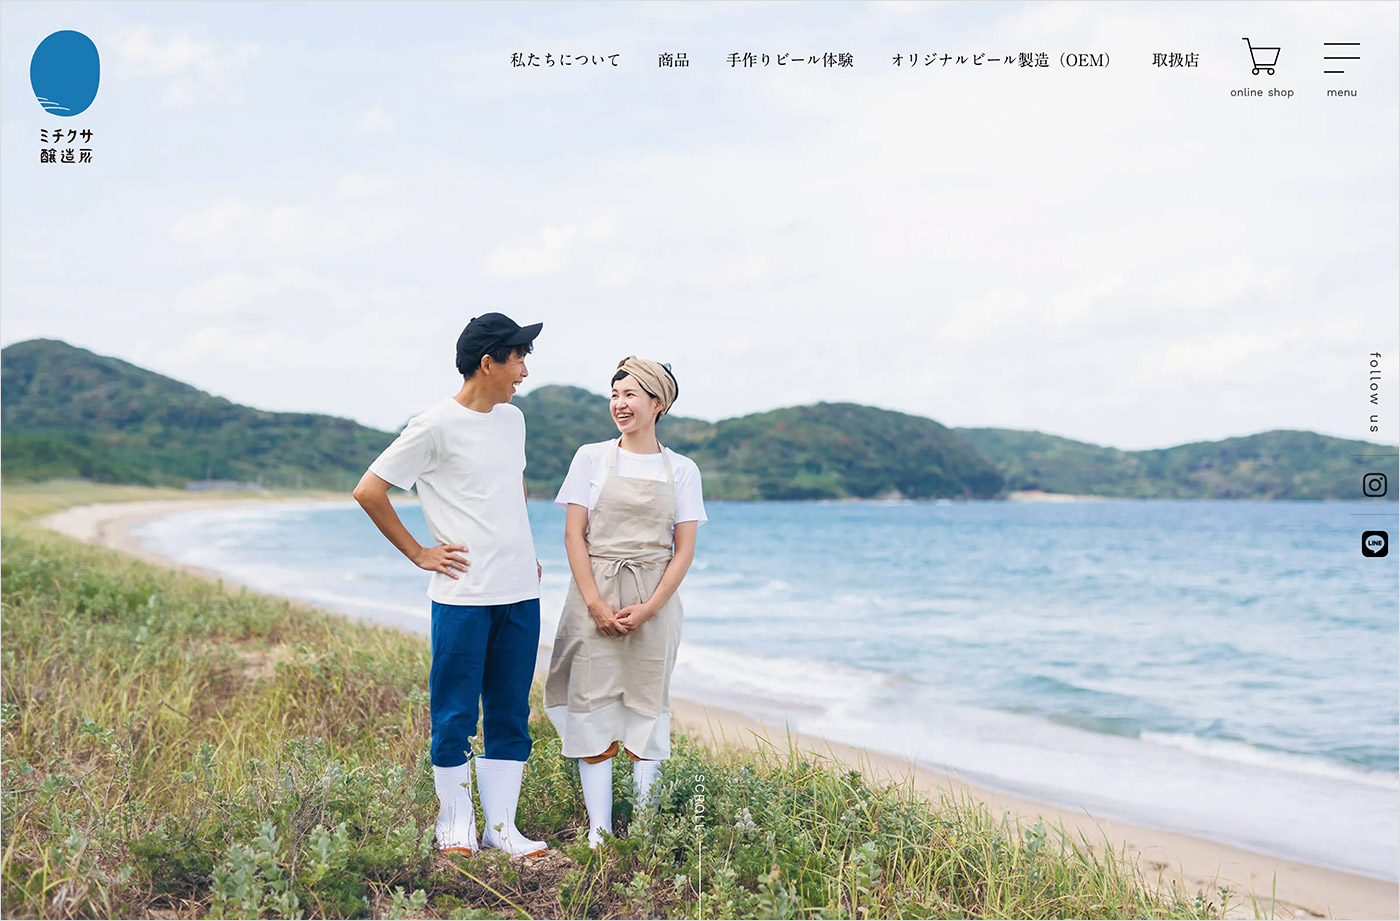 ミチクサ醸造所 – 海のほとりの小さなクラフトビール工房 – 福岡県ウェブサイトの画面キャプチャ画像